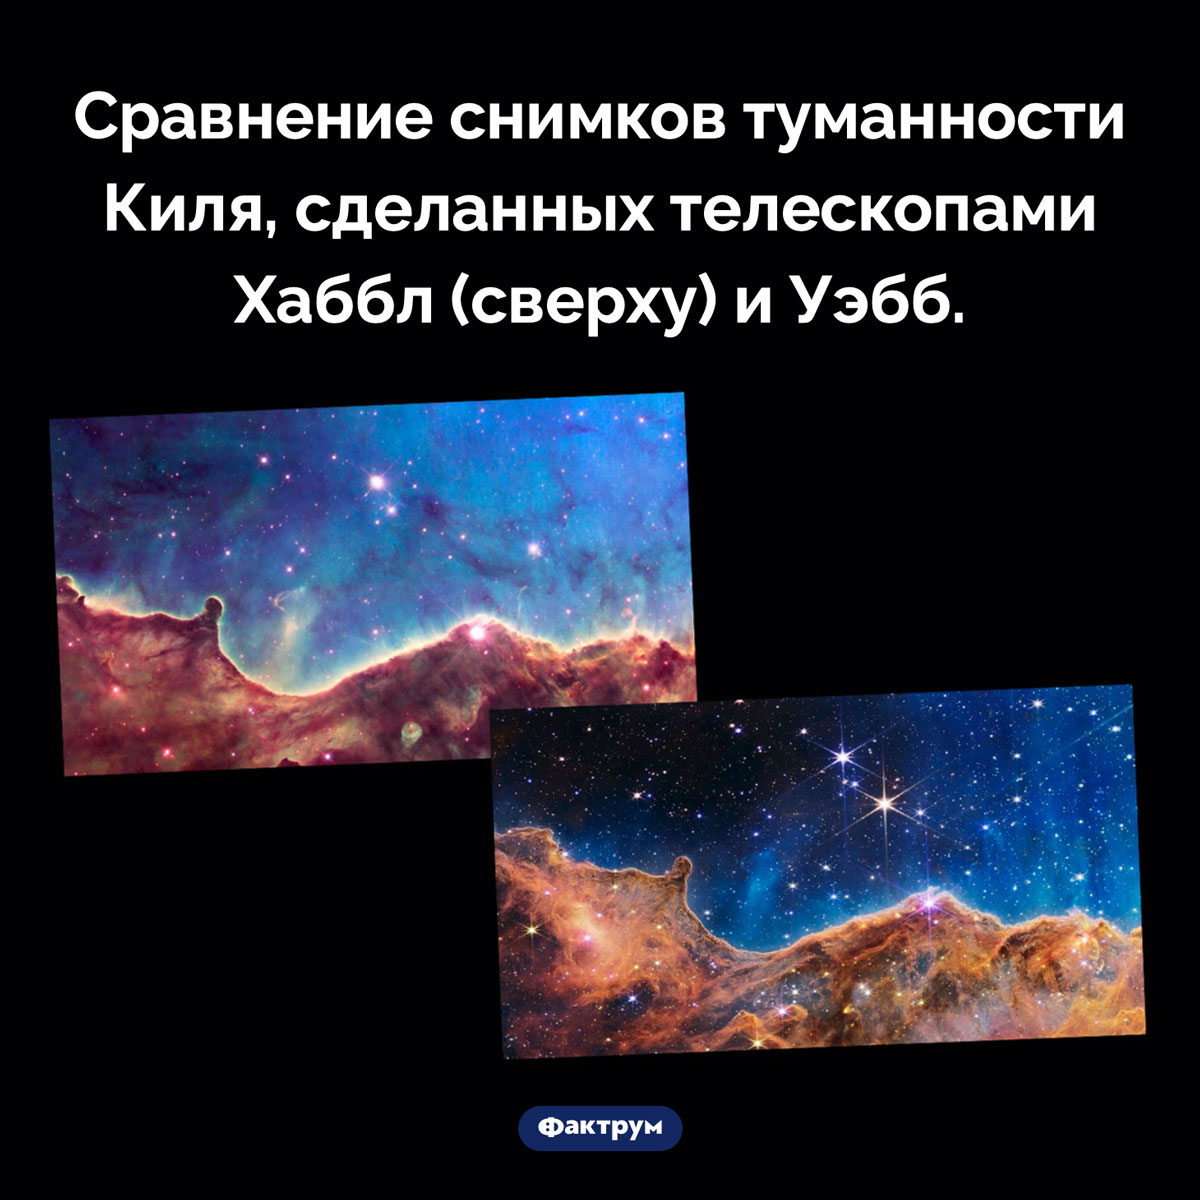 Сравнение снимков Хаббла и Уэбба. Сравнение снимков туманности Киля, сделанных телескопами Хаббл (сверху) и Уэбб.